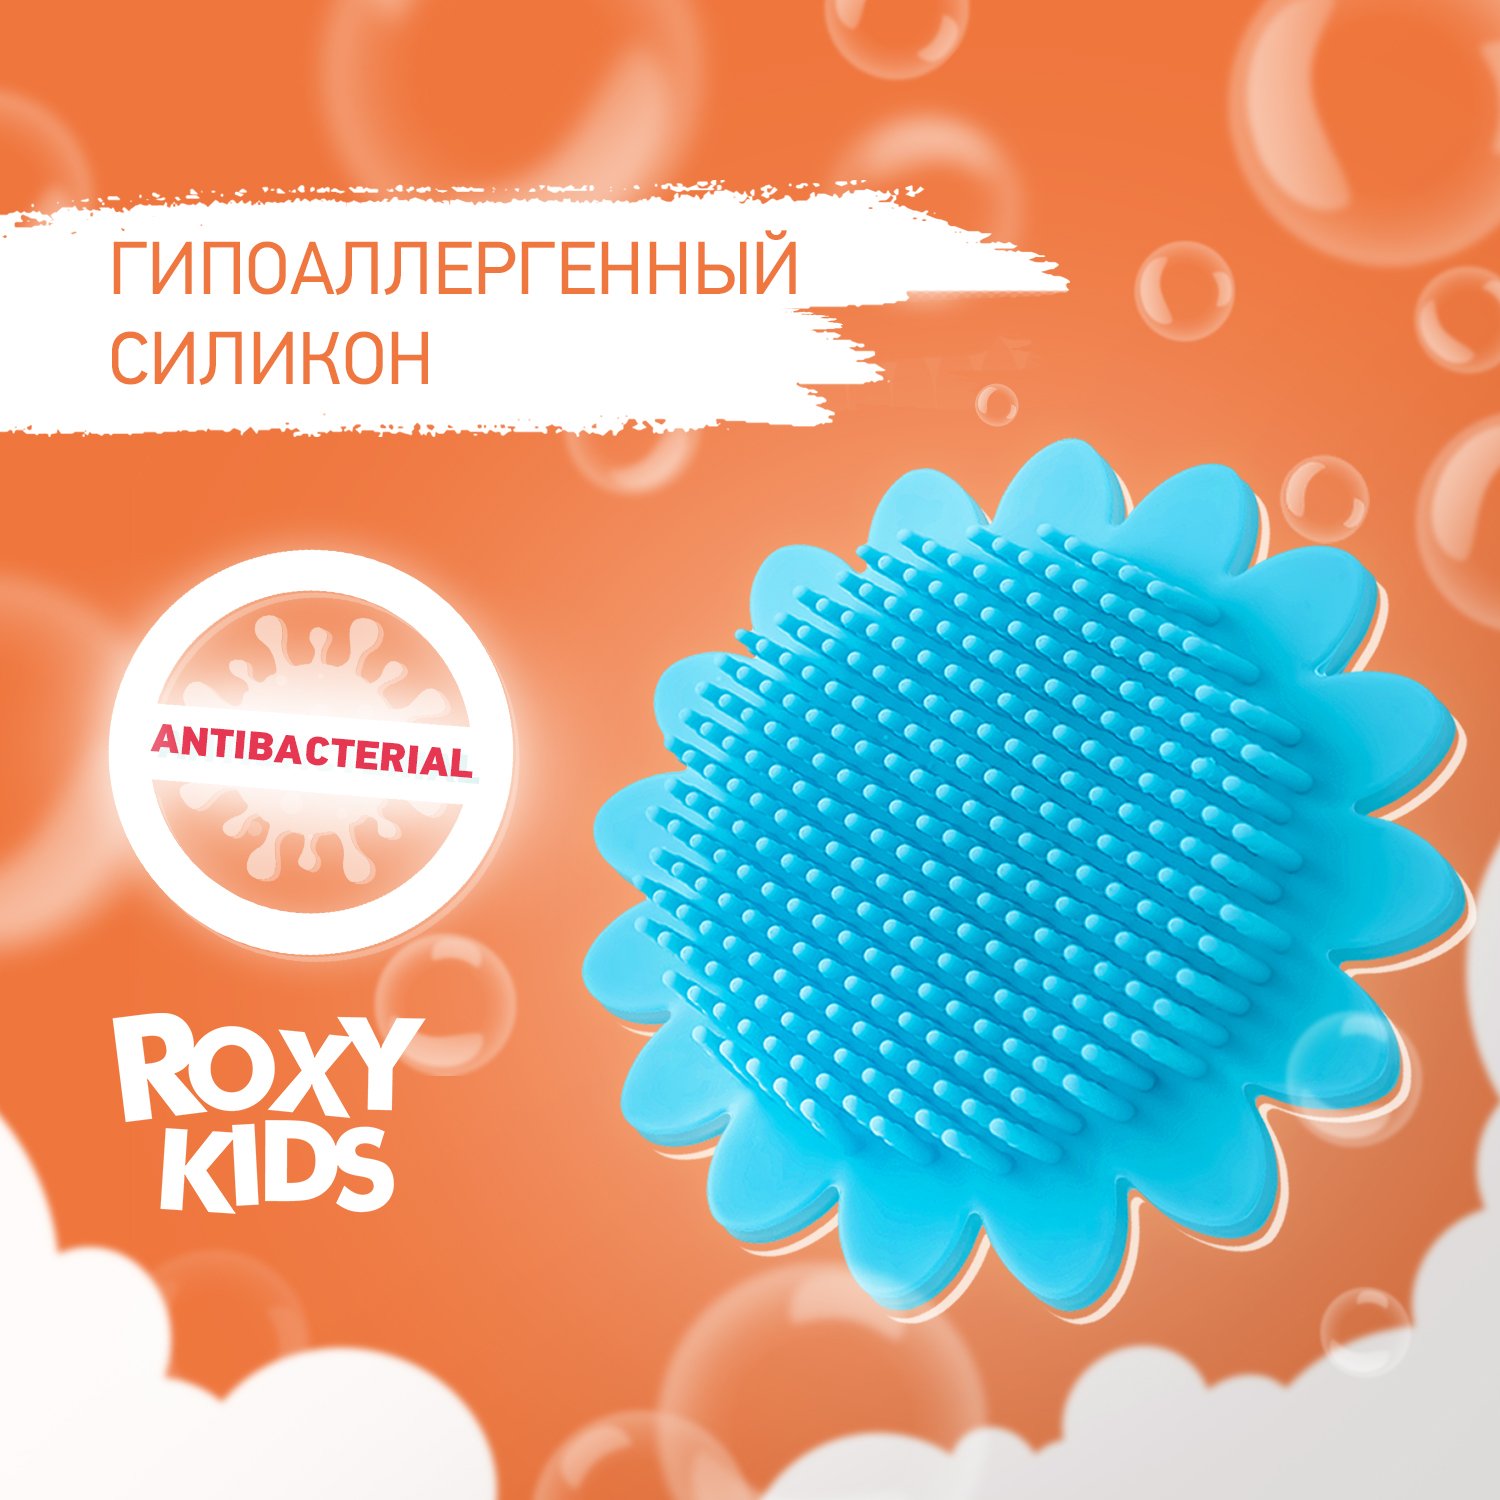 Губка антибактериальная ROXY-KIDS детская массажер для купания подсолнух цвет голубой - фото 2